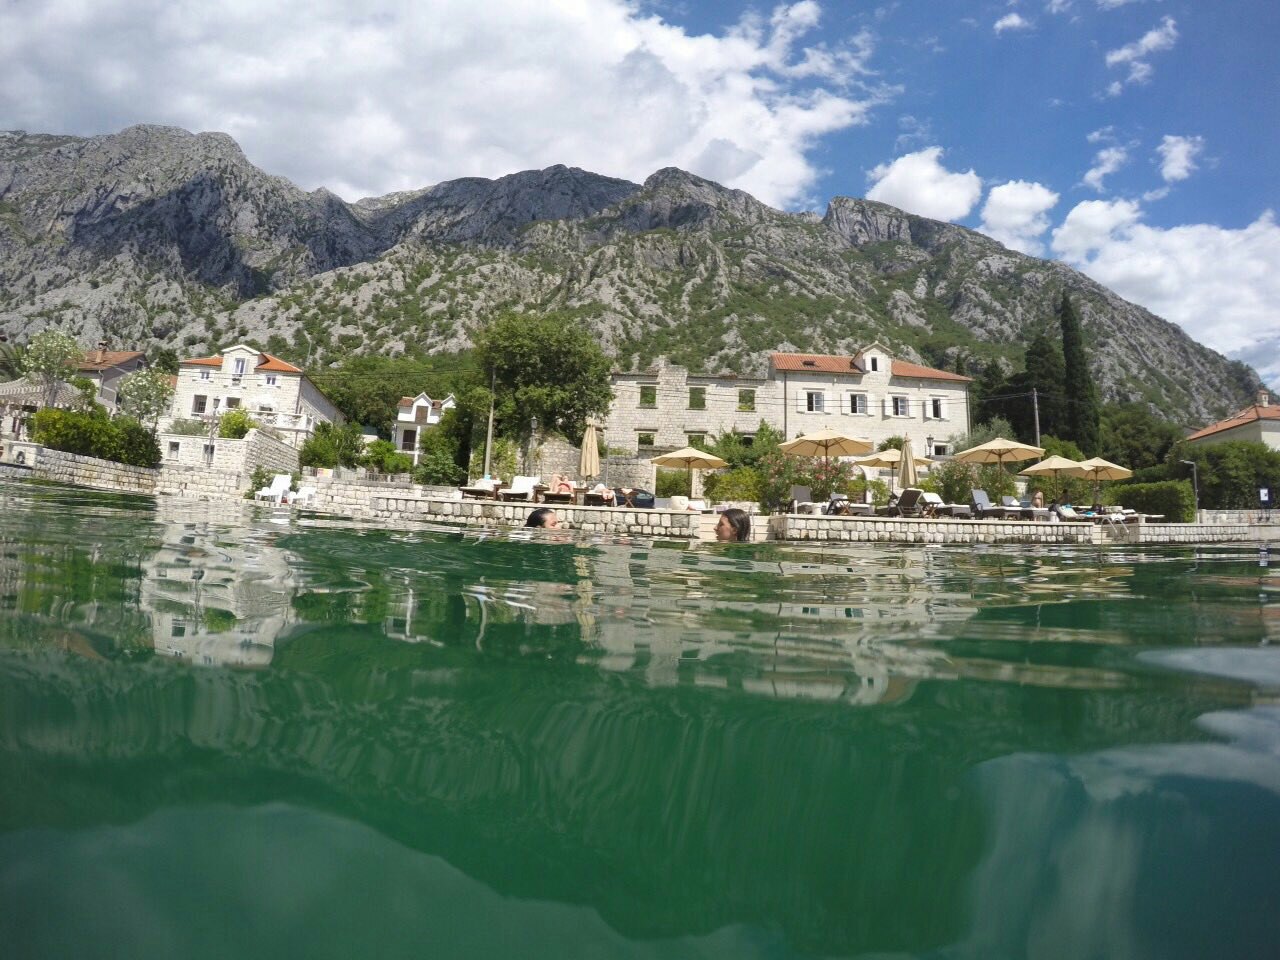 amforaproperty.com/Ekskluzivna vila na prvoj liniji do mora u Ljutoj, Kotor - Kapacitet do 22 osobe, privatni bazen, vrhunski smeštaj